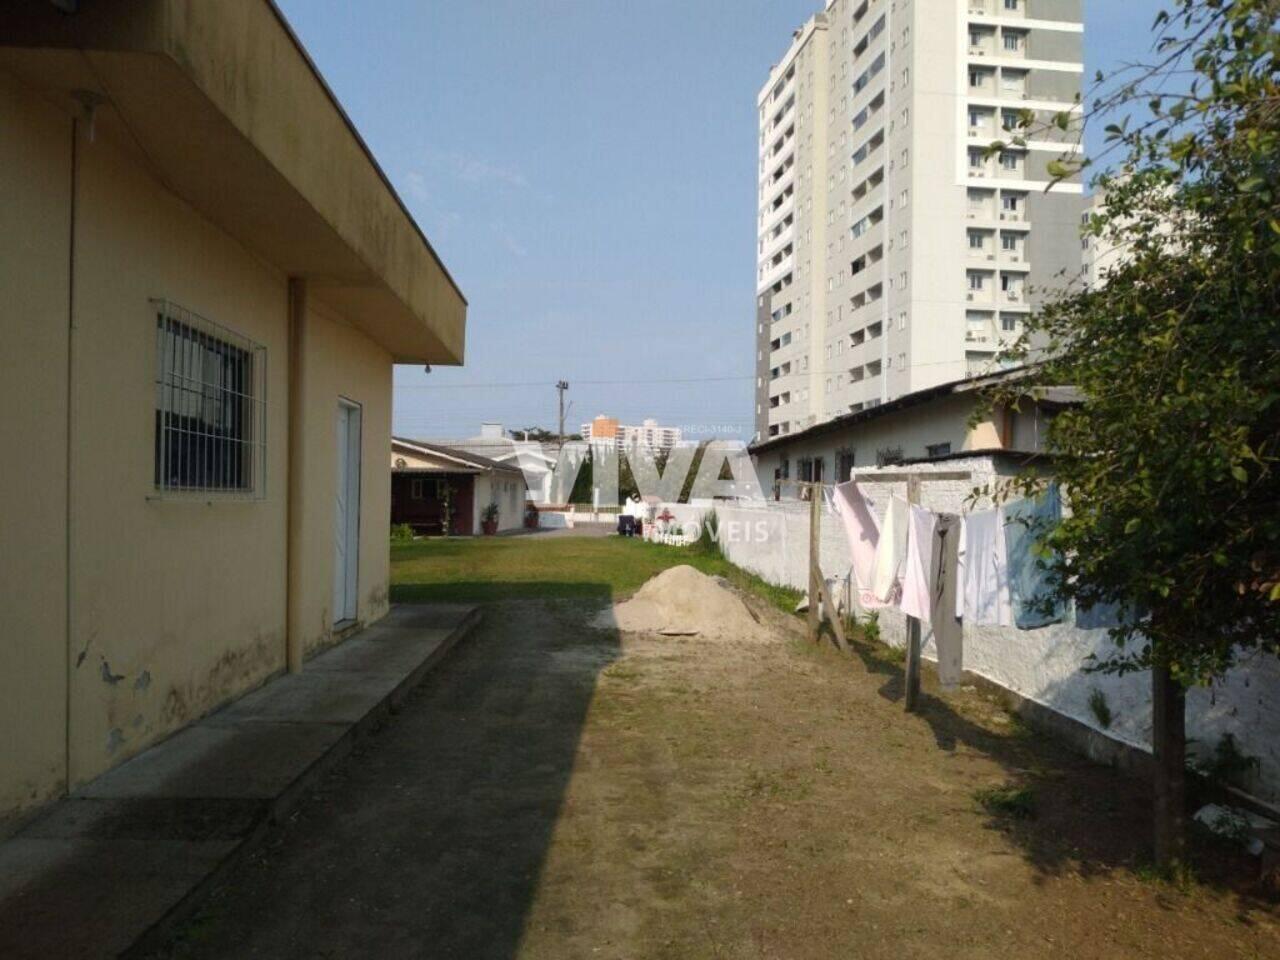 Terreno São João, Itajaí - SC